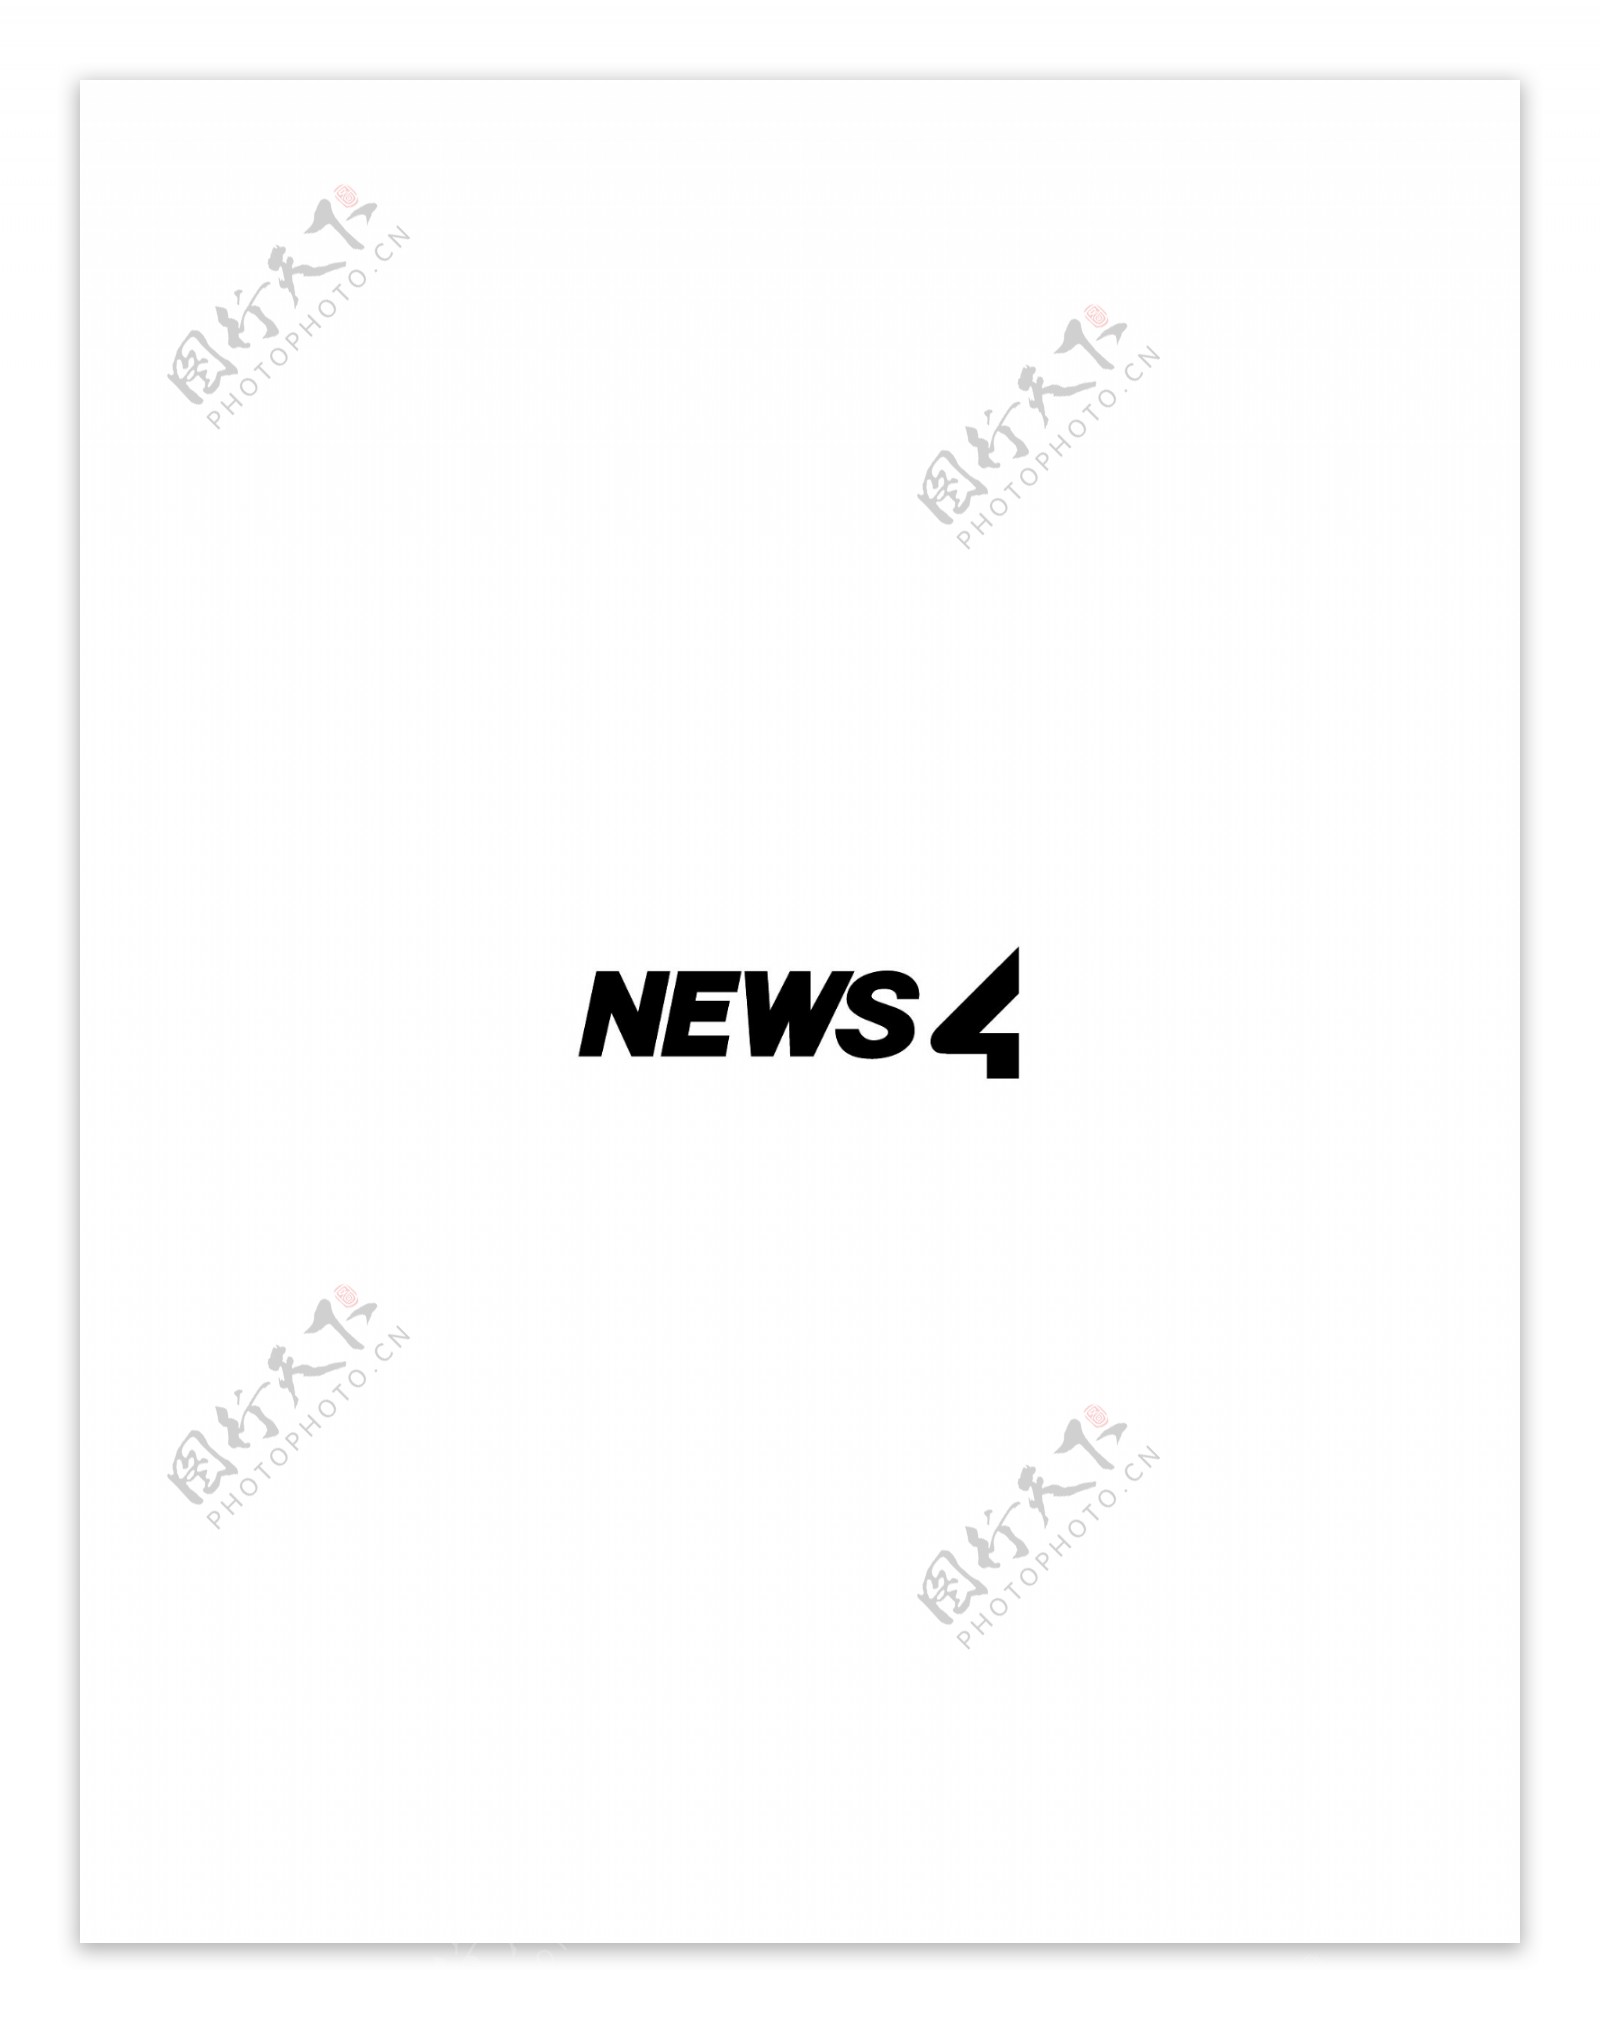 News4TVlogo设计欣赏软件公司标志News4TV下载标志设计欣赏